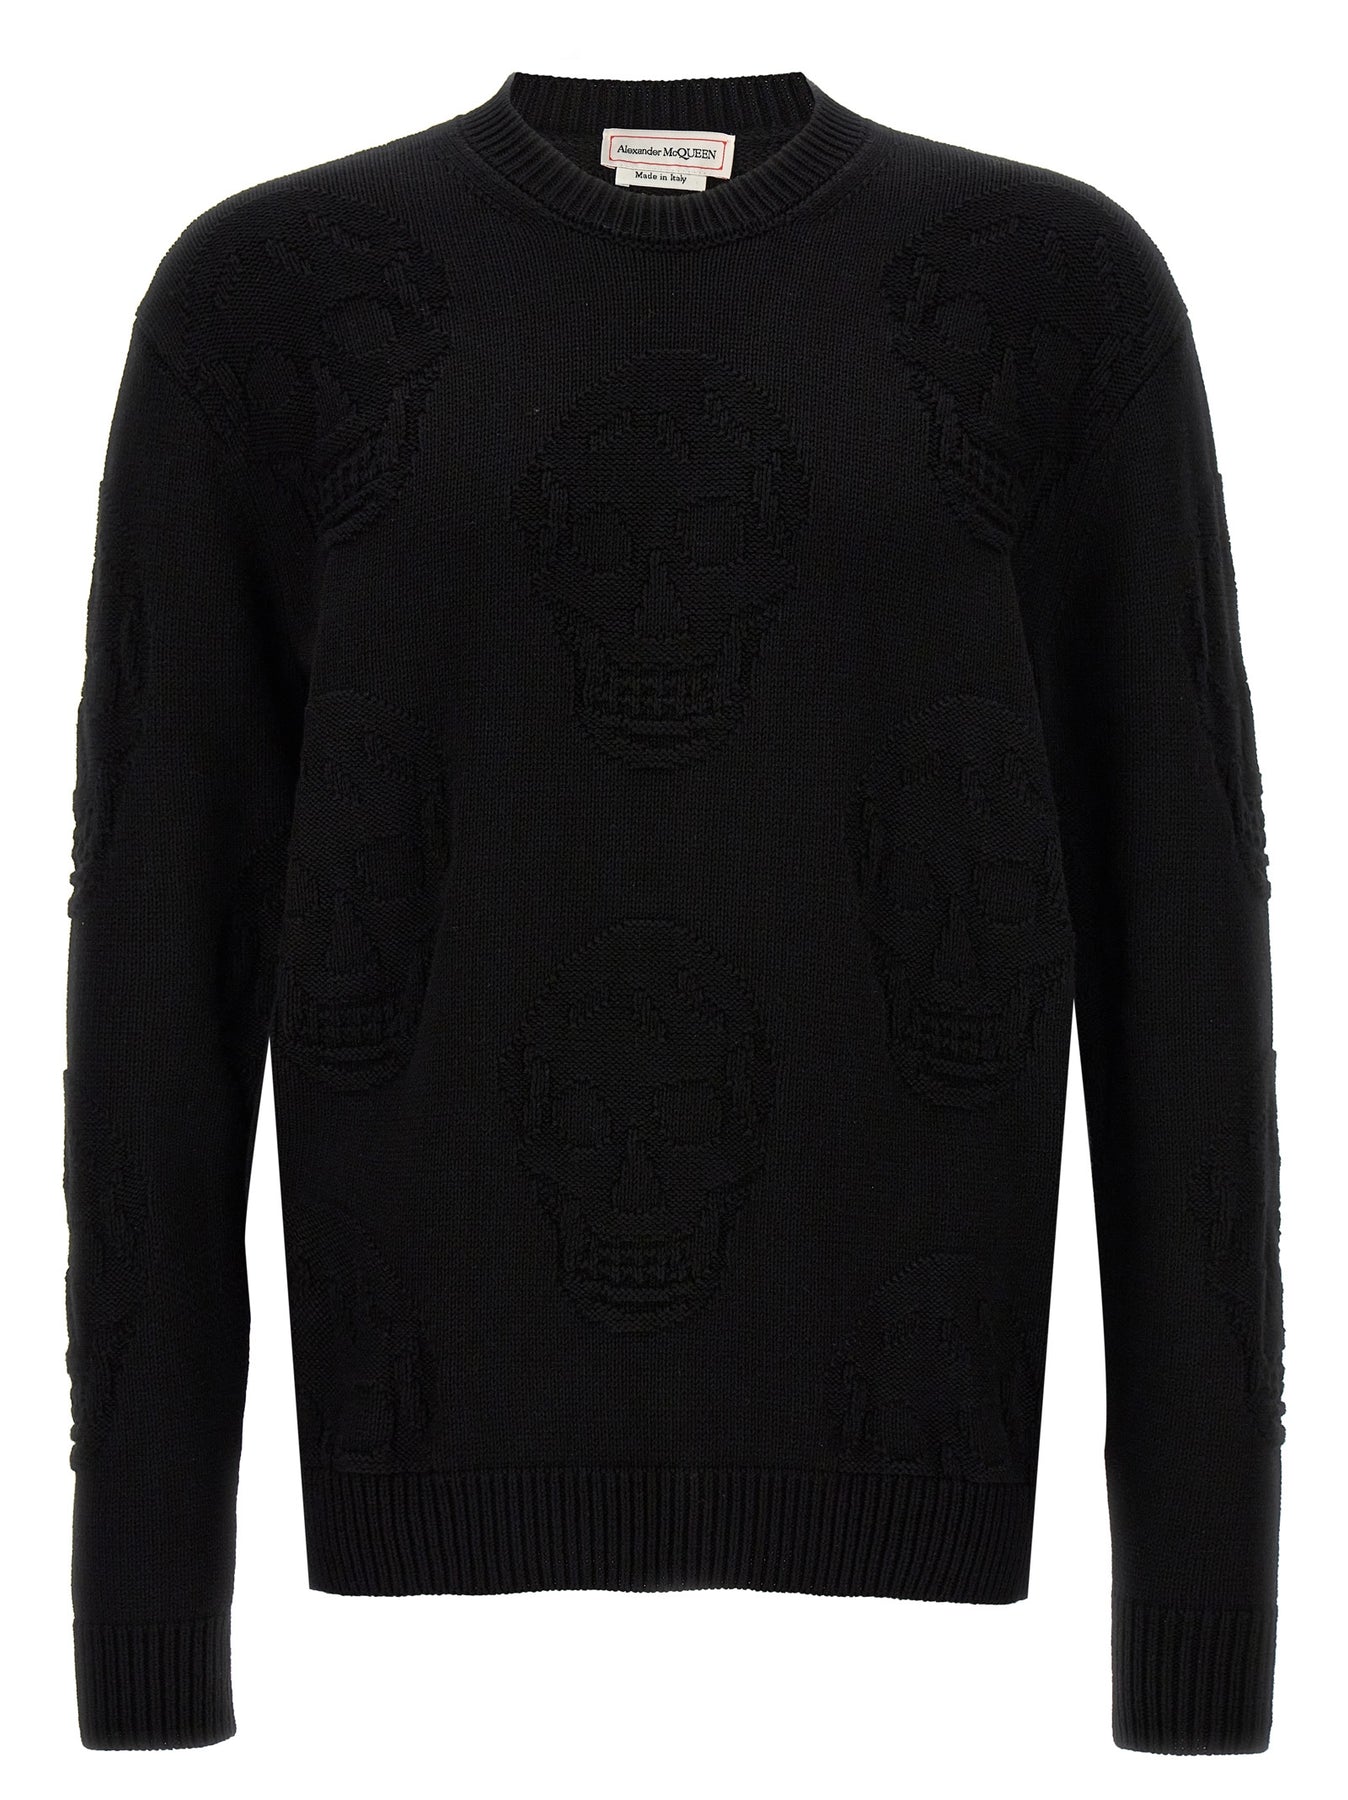 Shop Alexander Mcqueen Skull Sweater, Cardigans